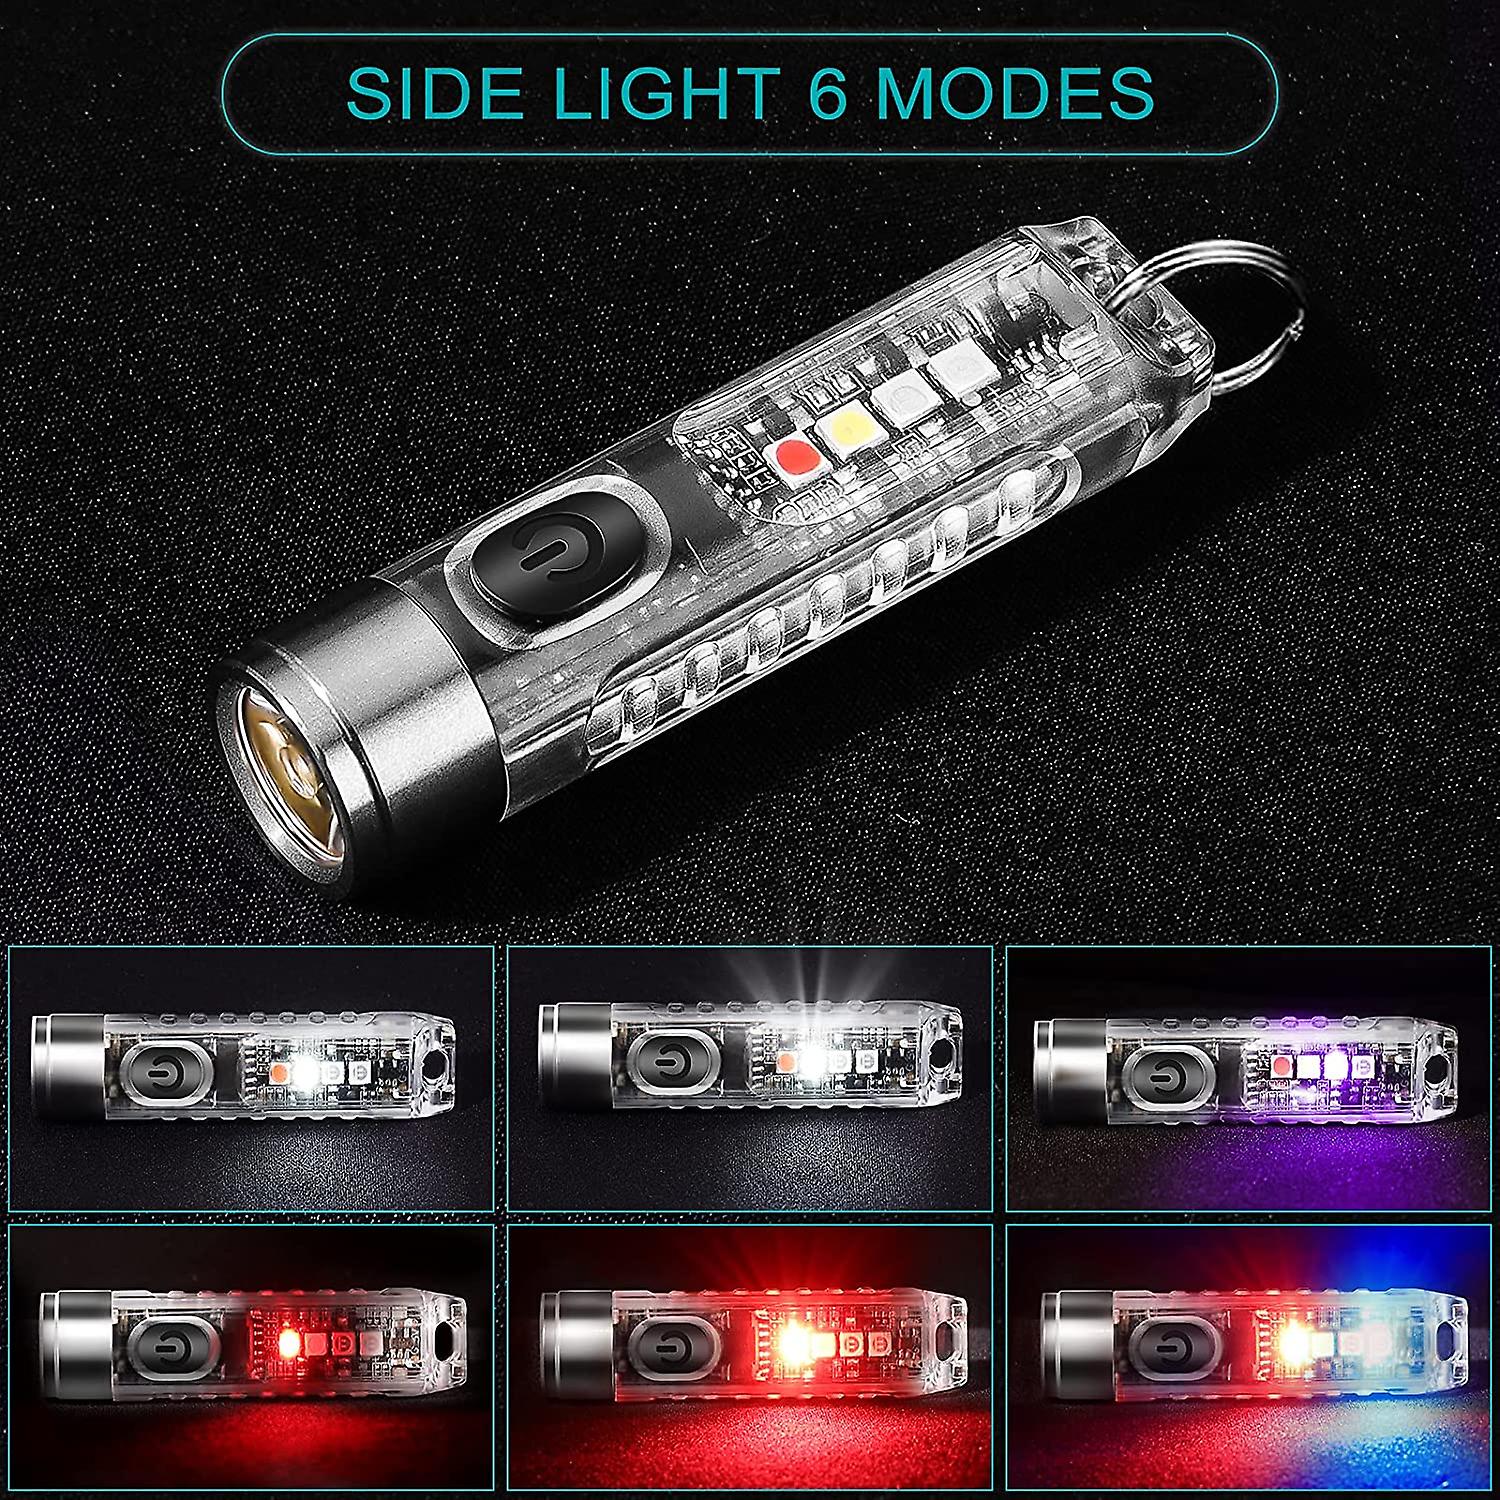 Фонарь светодиодный Vezerlezer S11-T, Luminus SST20 + Samsung 351B, 400 лм+Red+UV+Blue, 300 мАч, USB Type-C, прозрачный